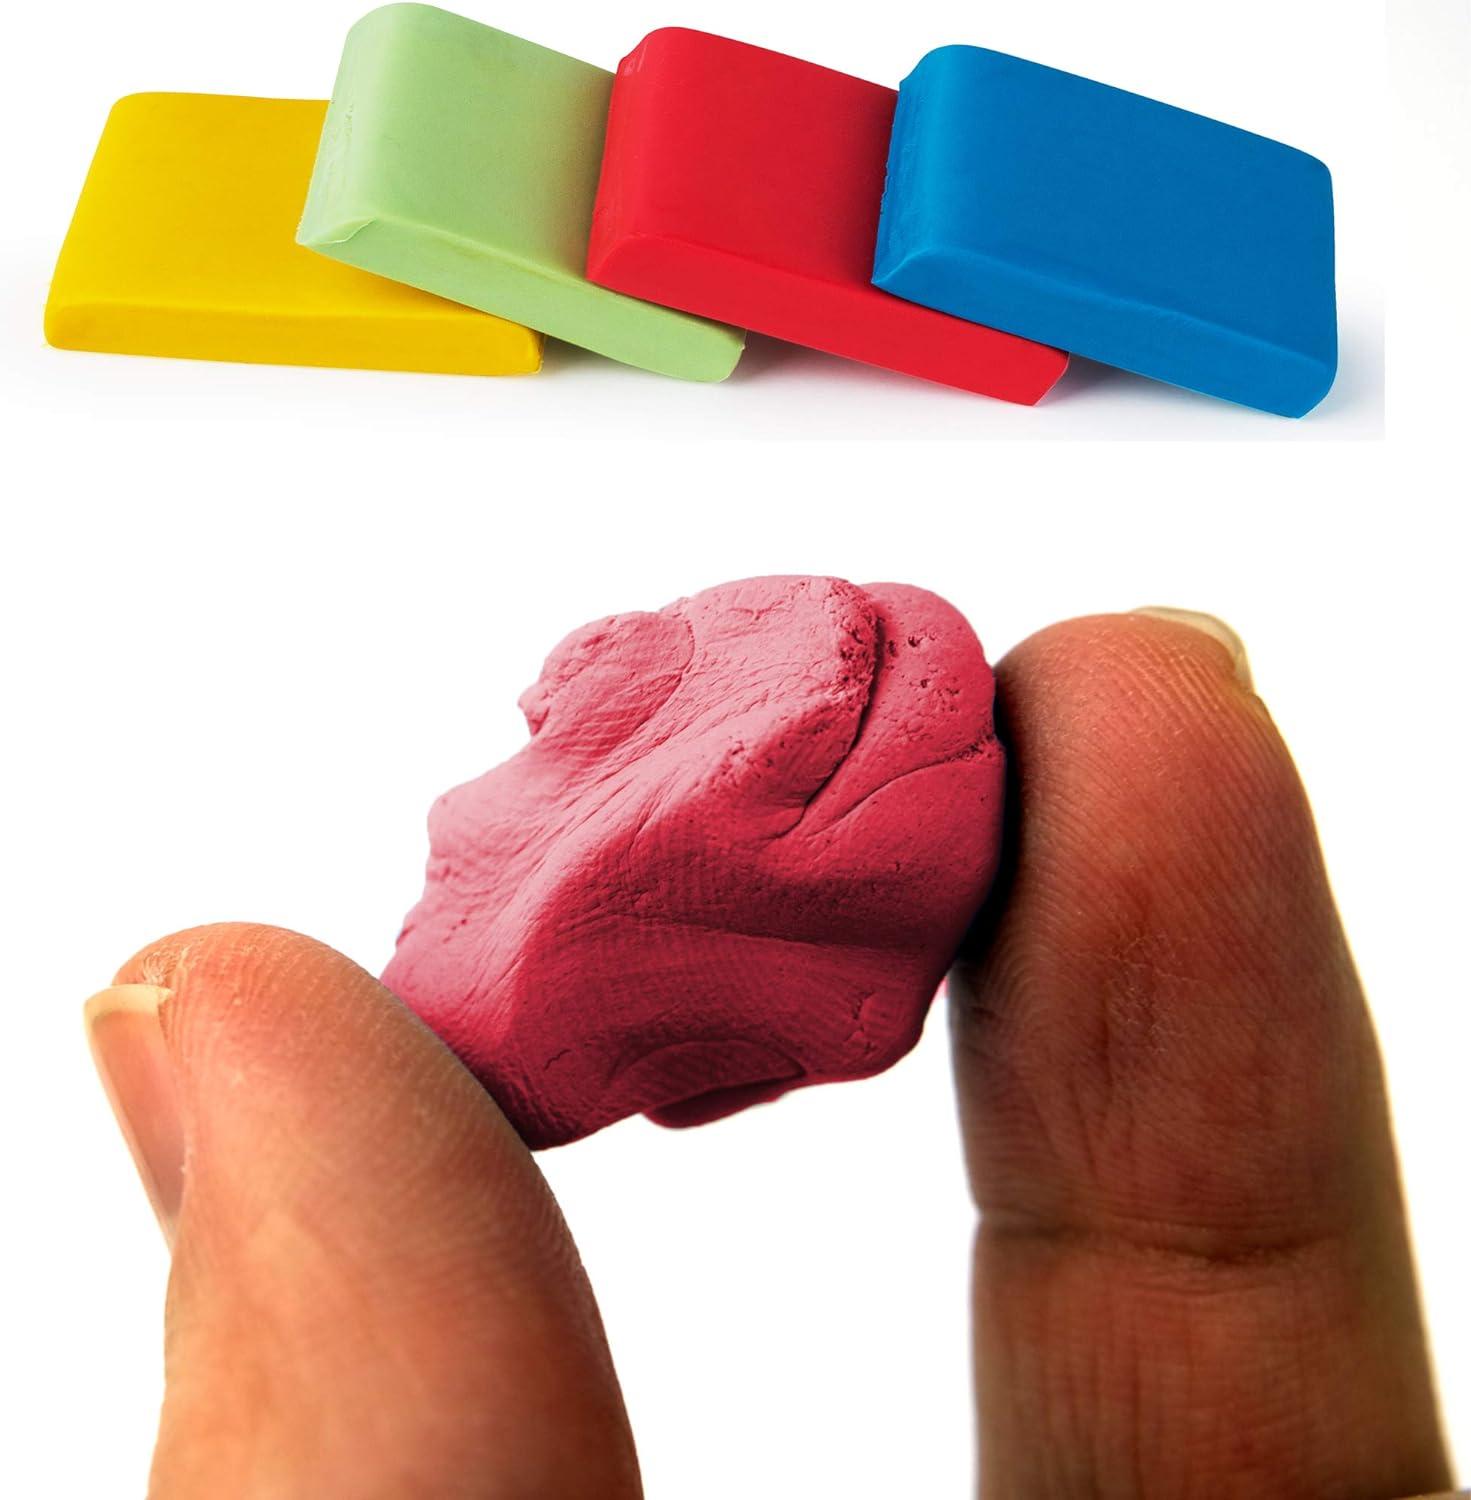 Mr. Pen- Kneaded Eraser Erasers for Drawing 16 Pack Artist Eraser